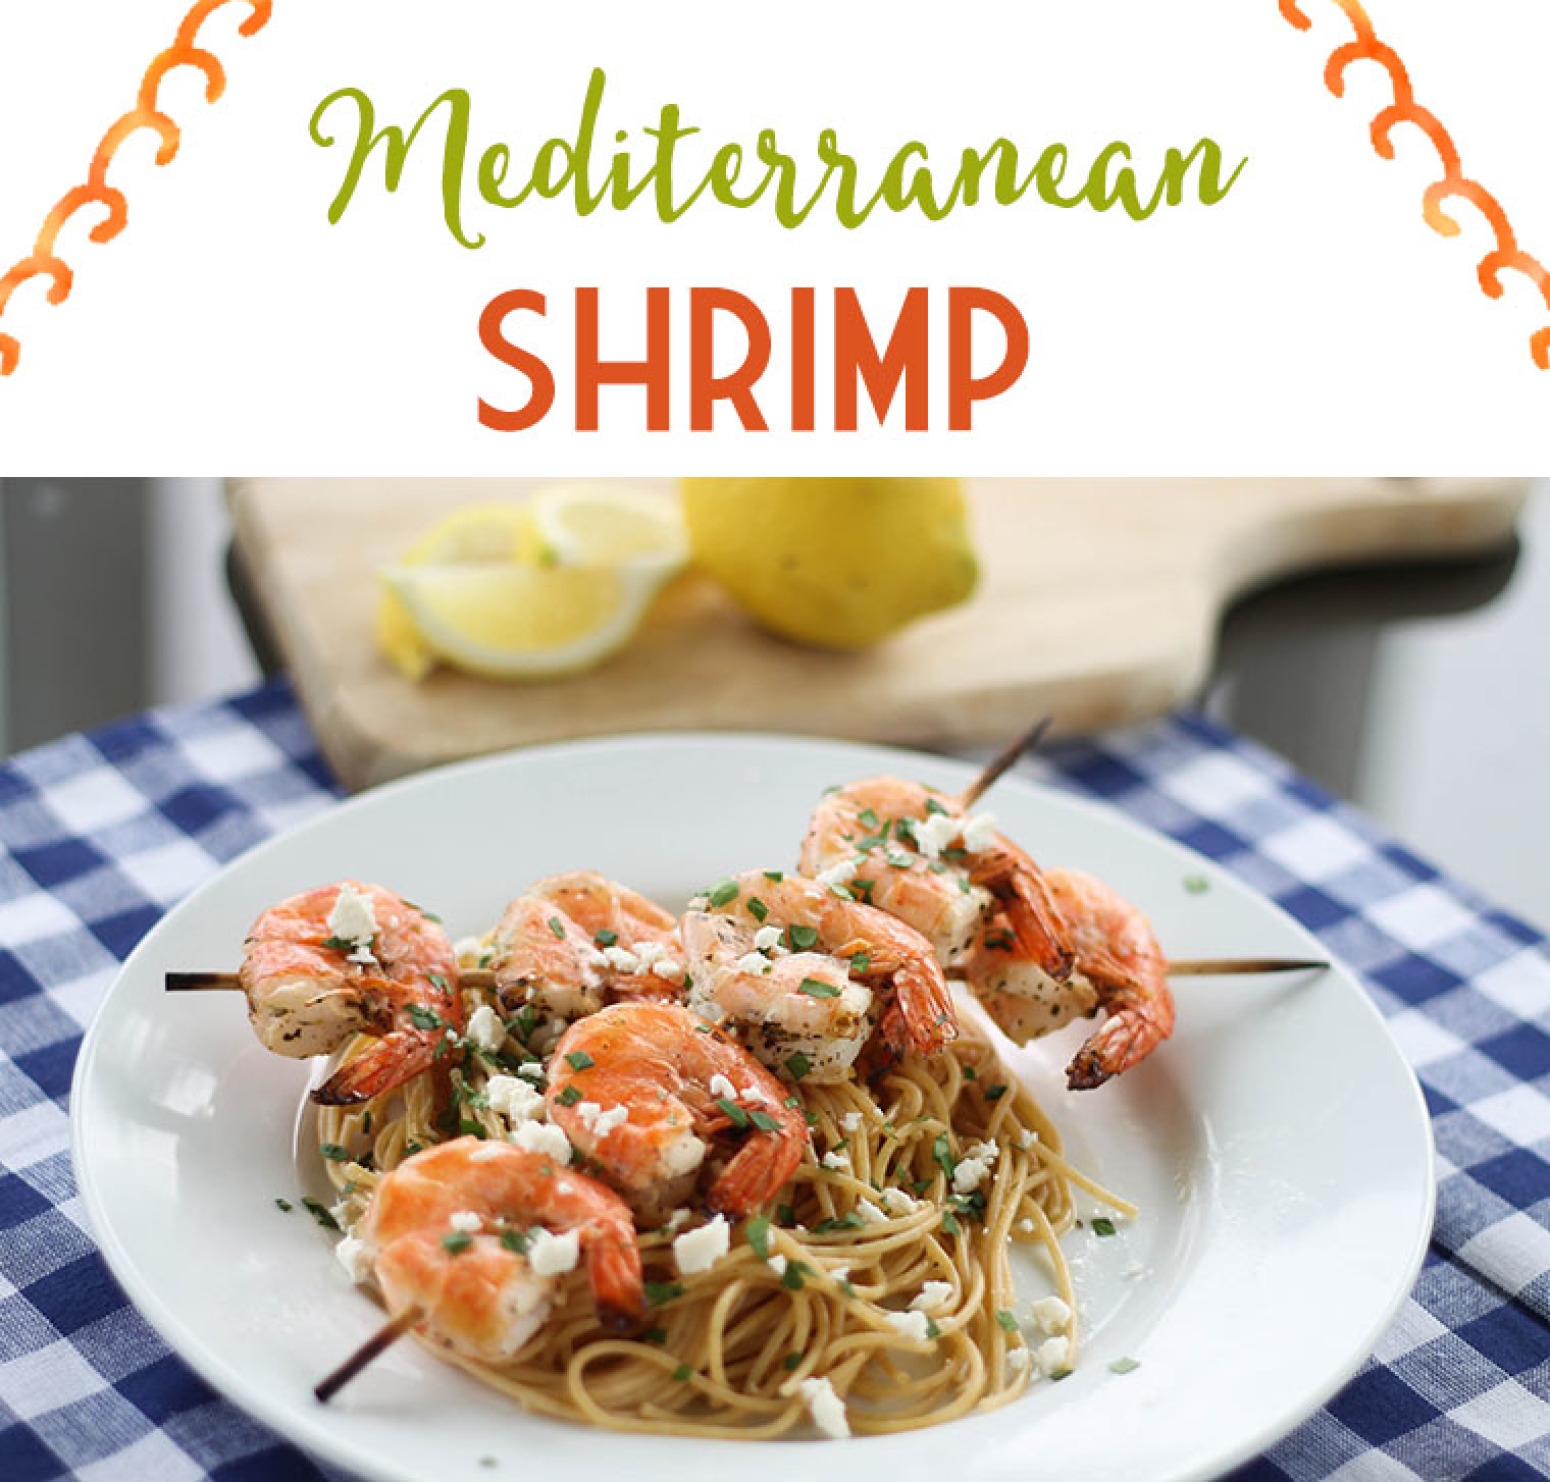 Mediterranean Shrimp Recipe 2 | Just A Pinch Recipes